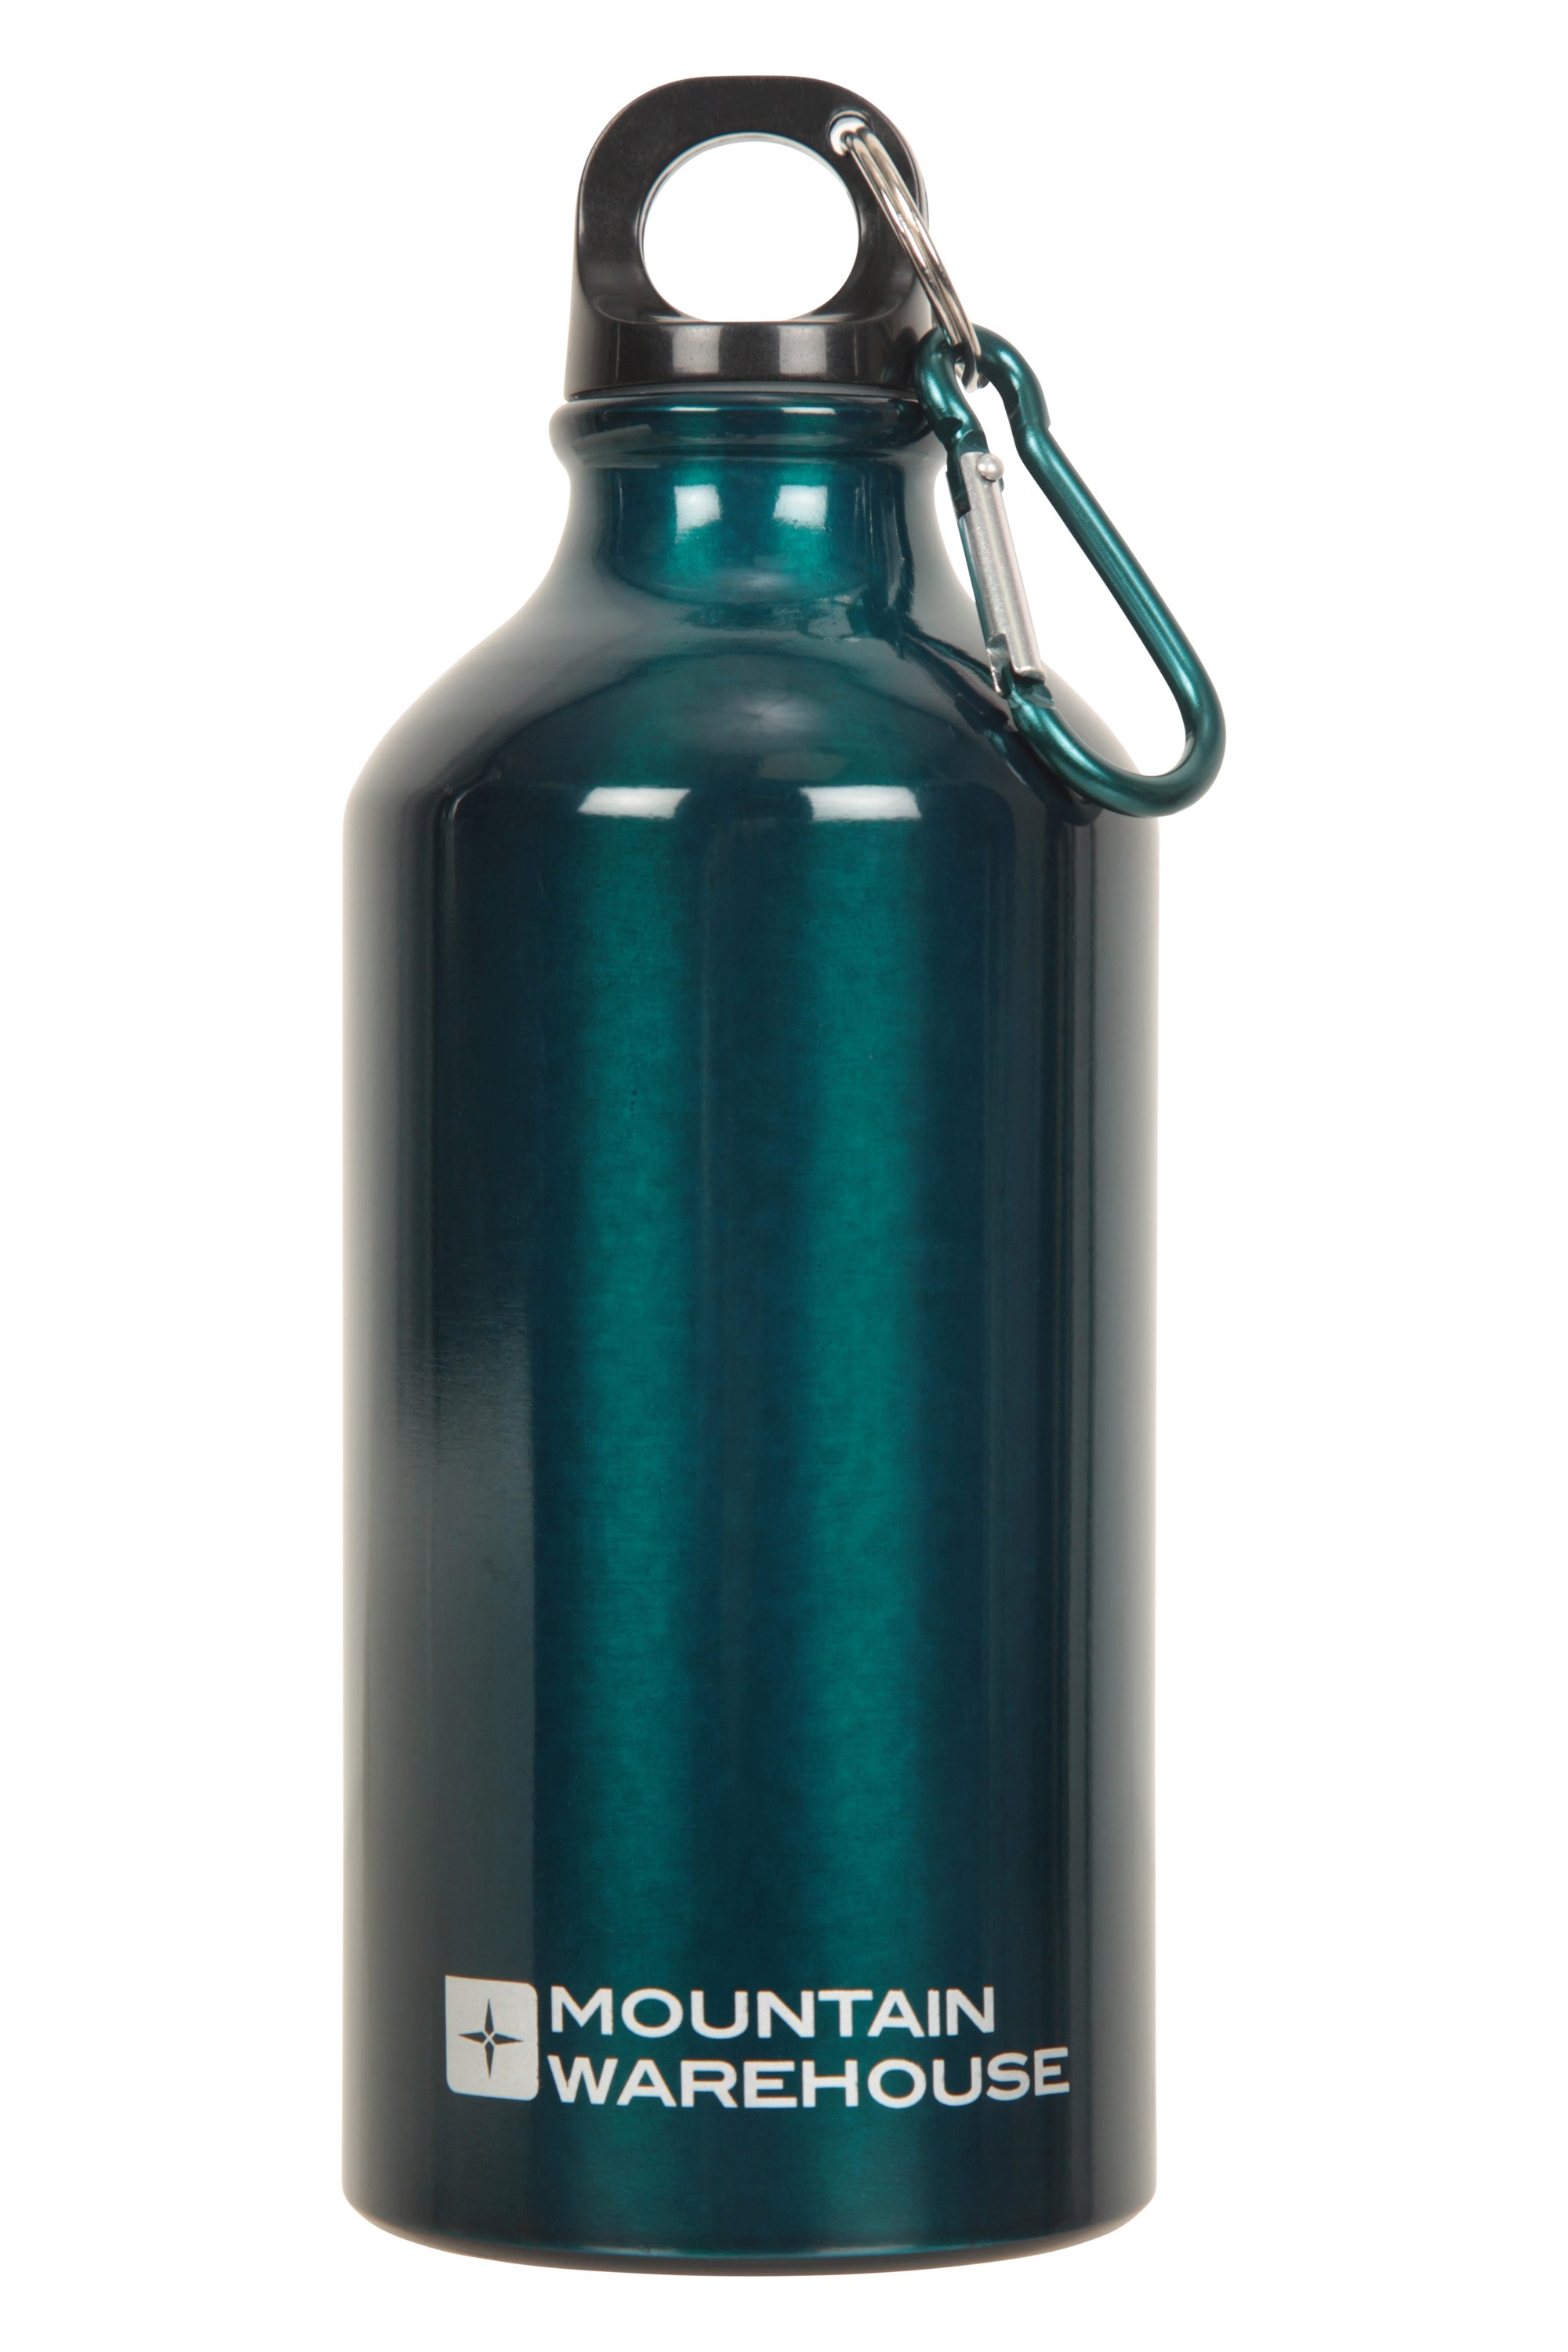 Aluminium Outdoor Trinkflasche Flasche mit Karabiner